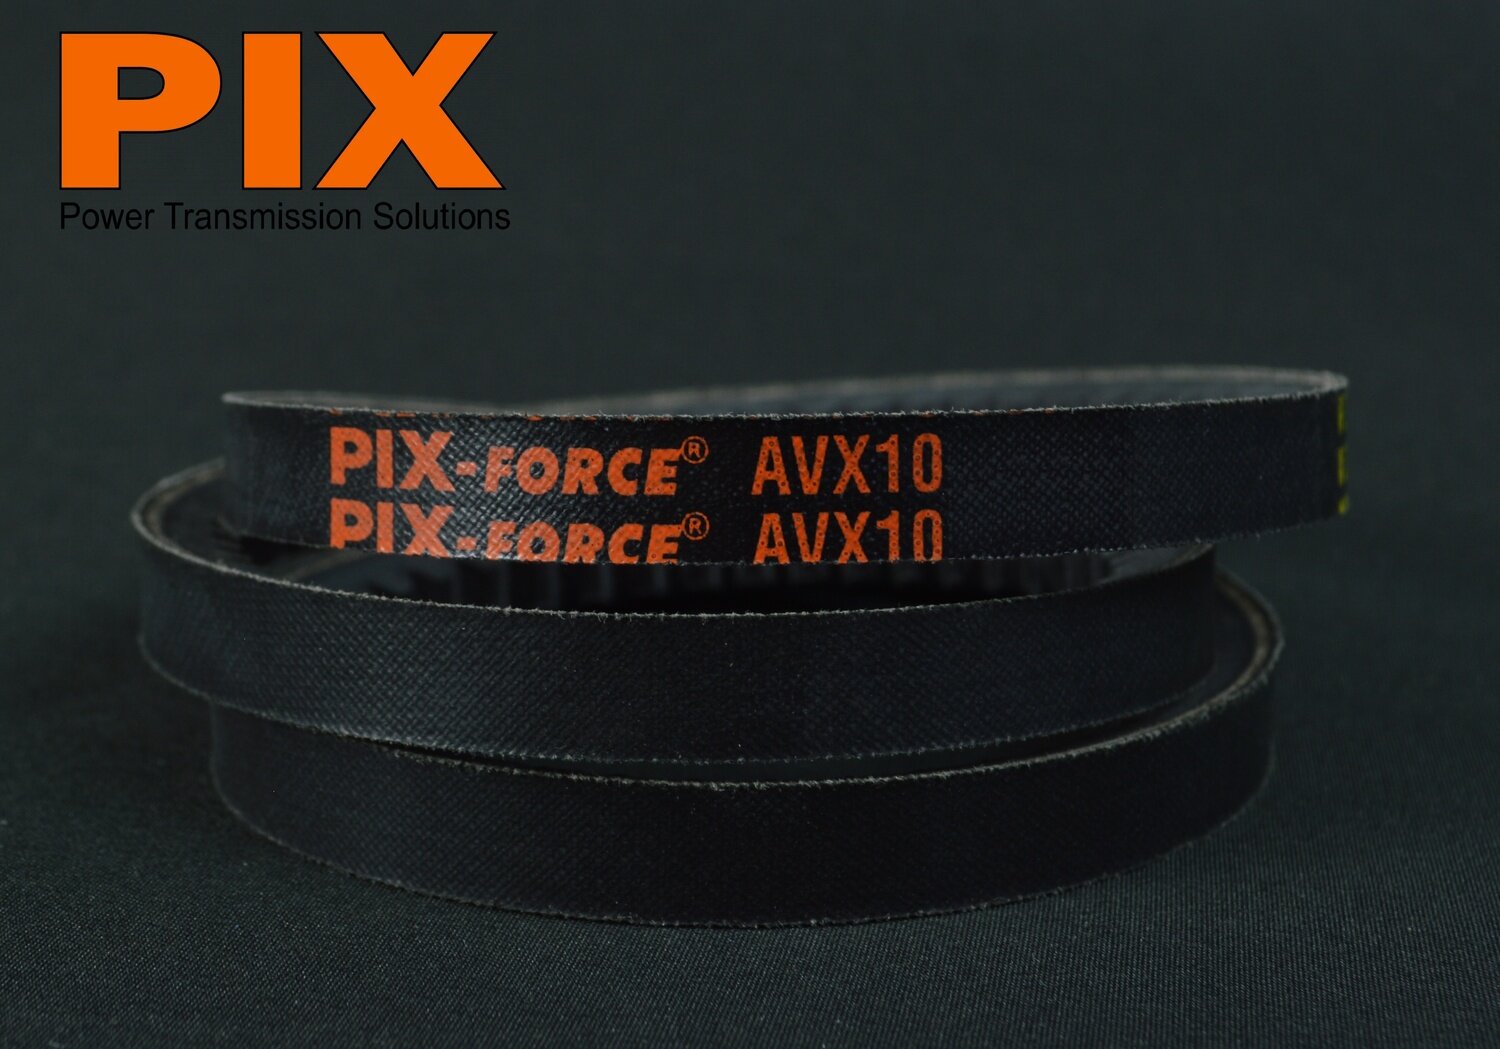 AVX10X710 PIX